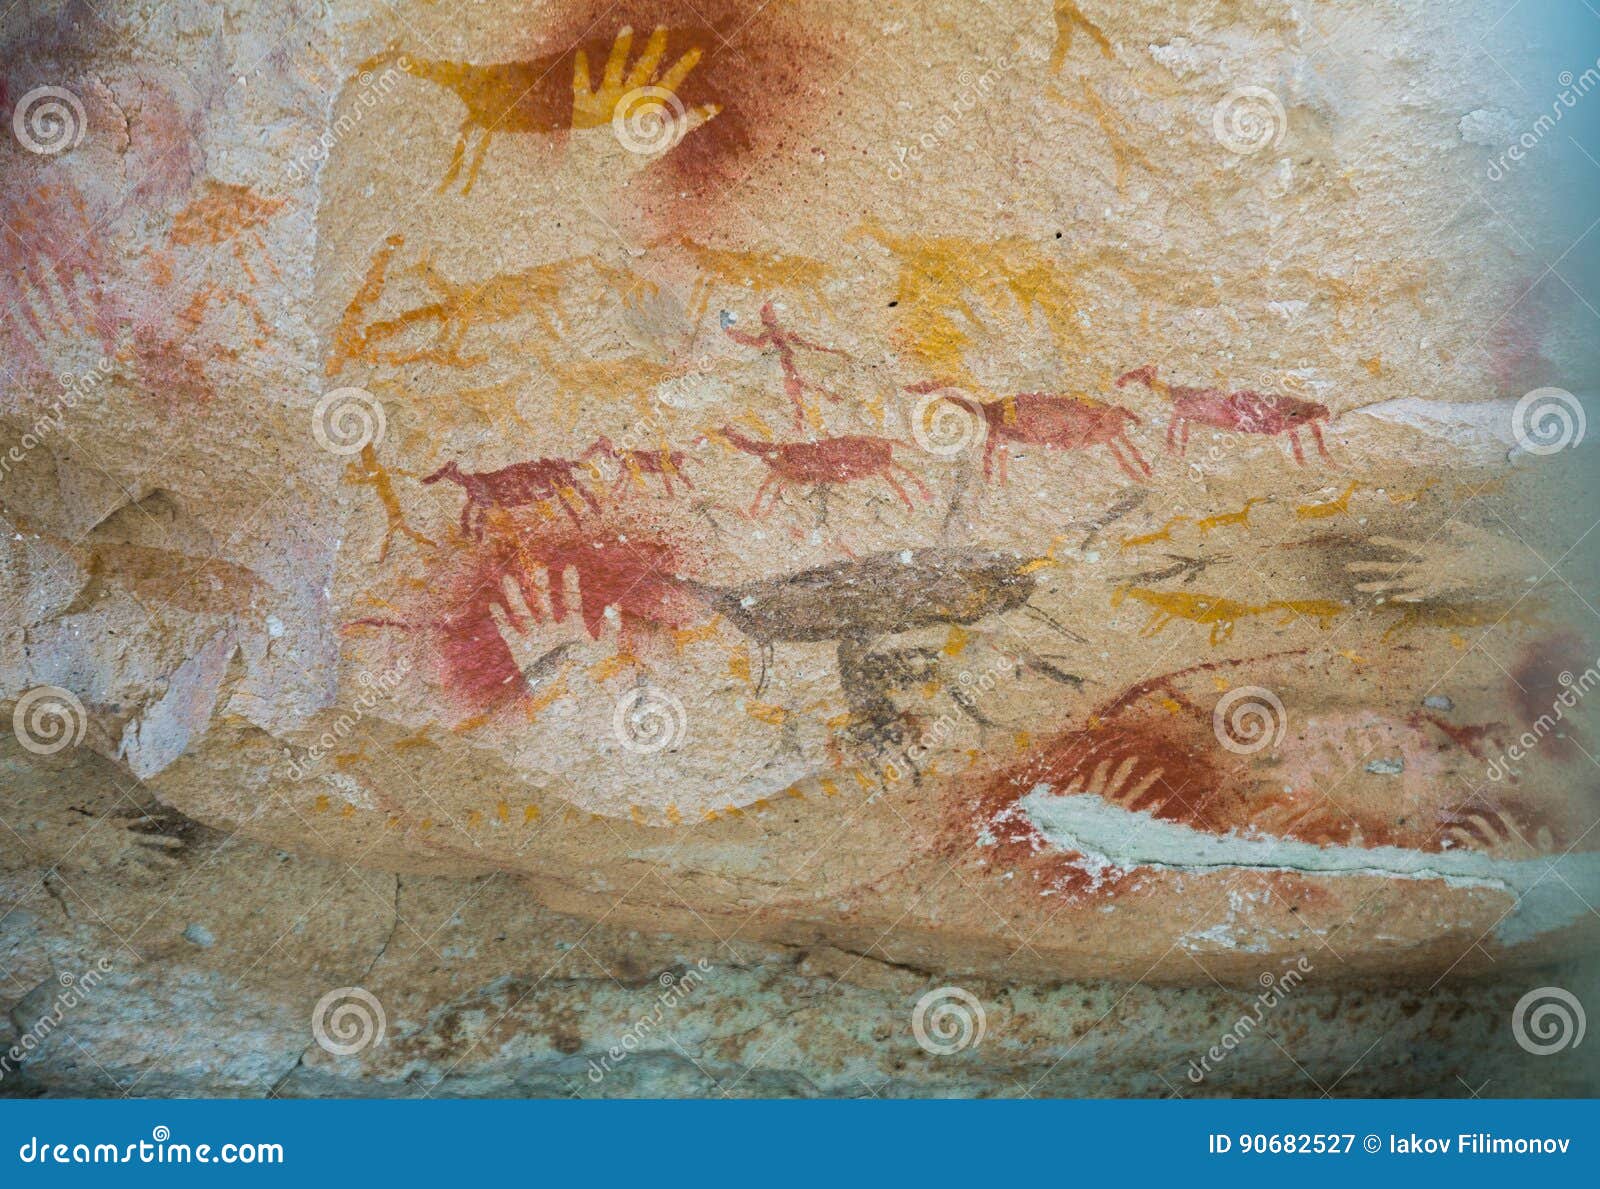 cave paintings in cueva de las manos